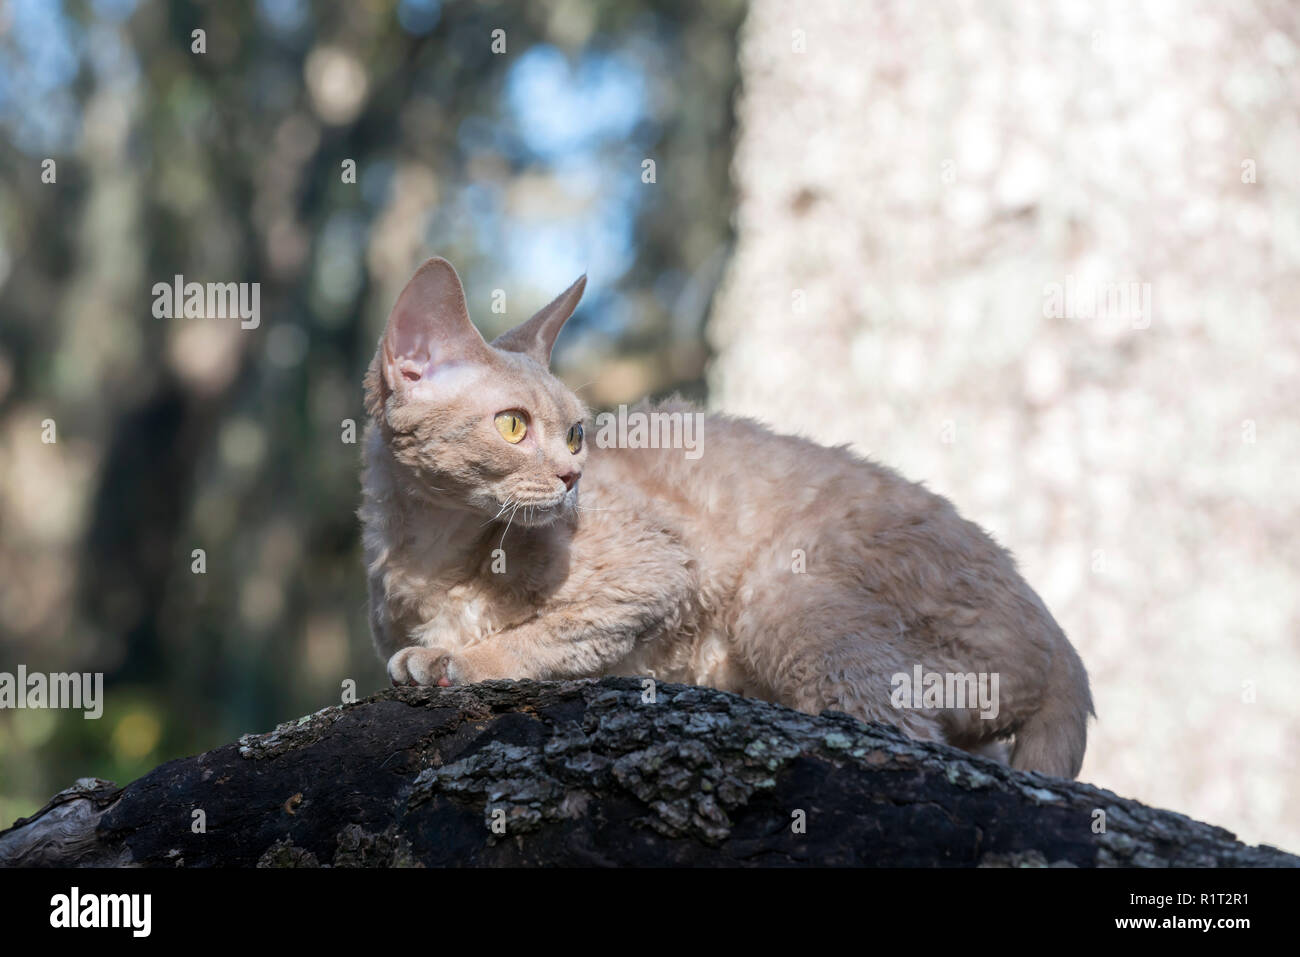 Devon Rex cat on a fallen log in the woods Stock Photo